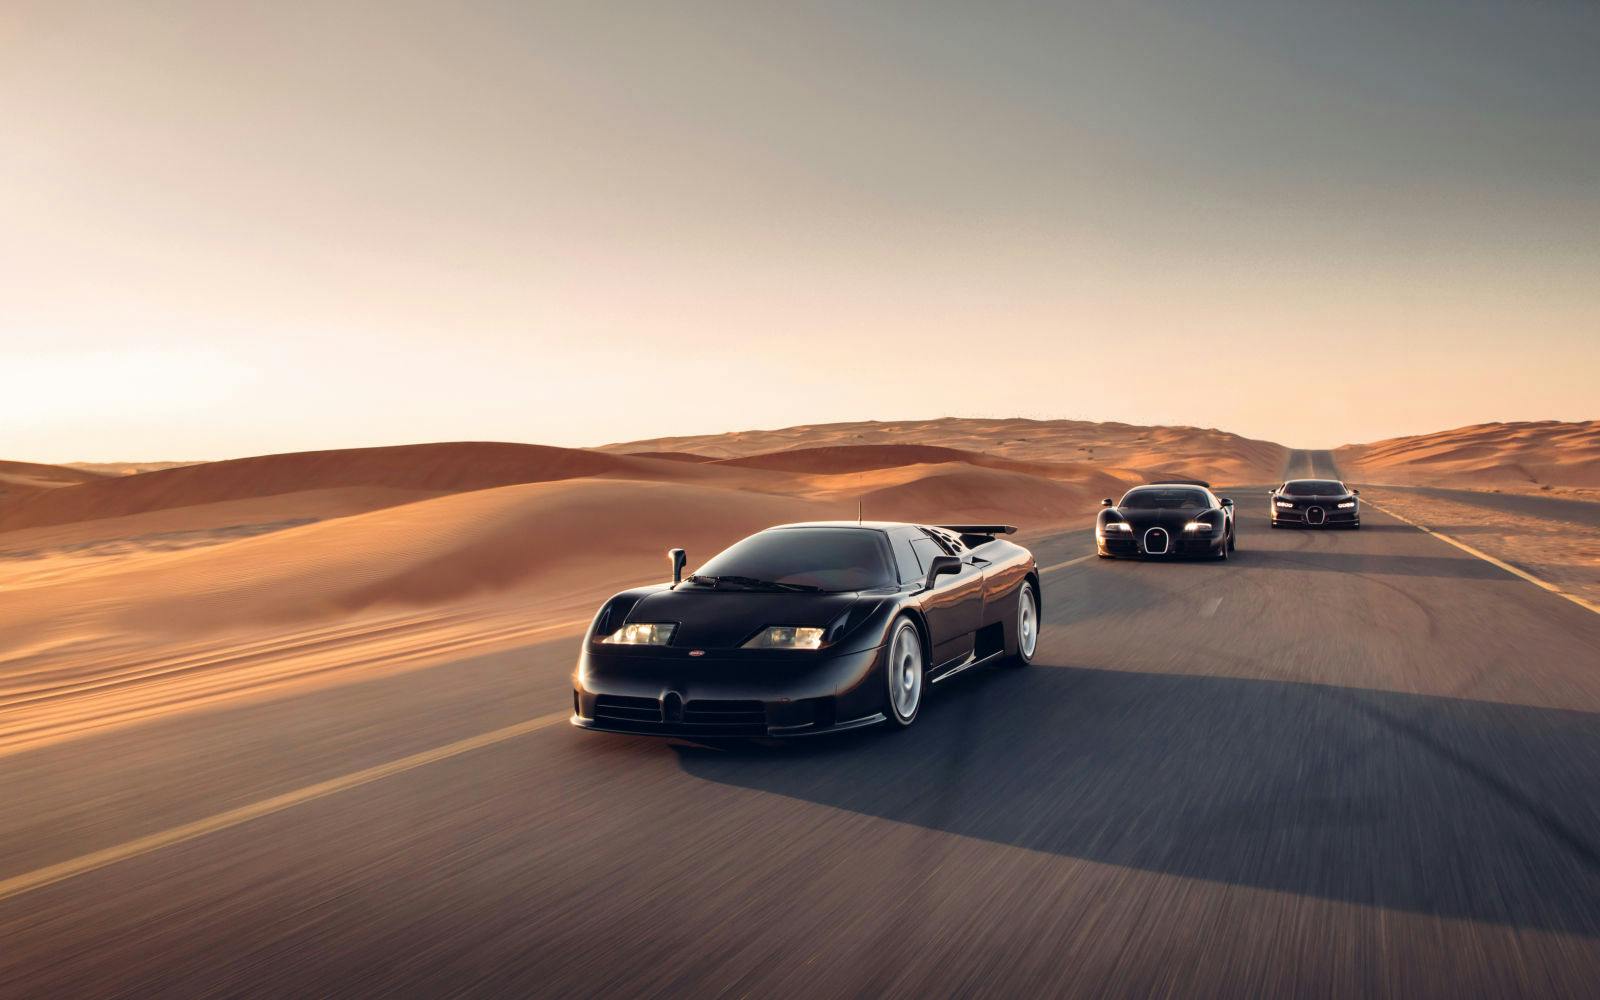 Die Trilogie der Bugatti-Moderne, Bugatti EB110, Veyron 16.4 und Chiron, vereint in Dubai